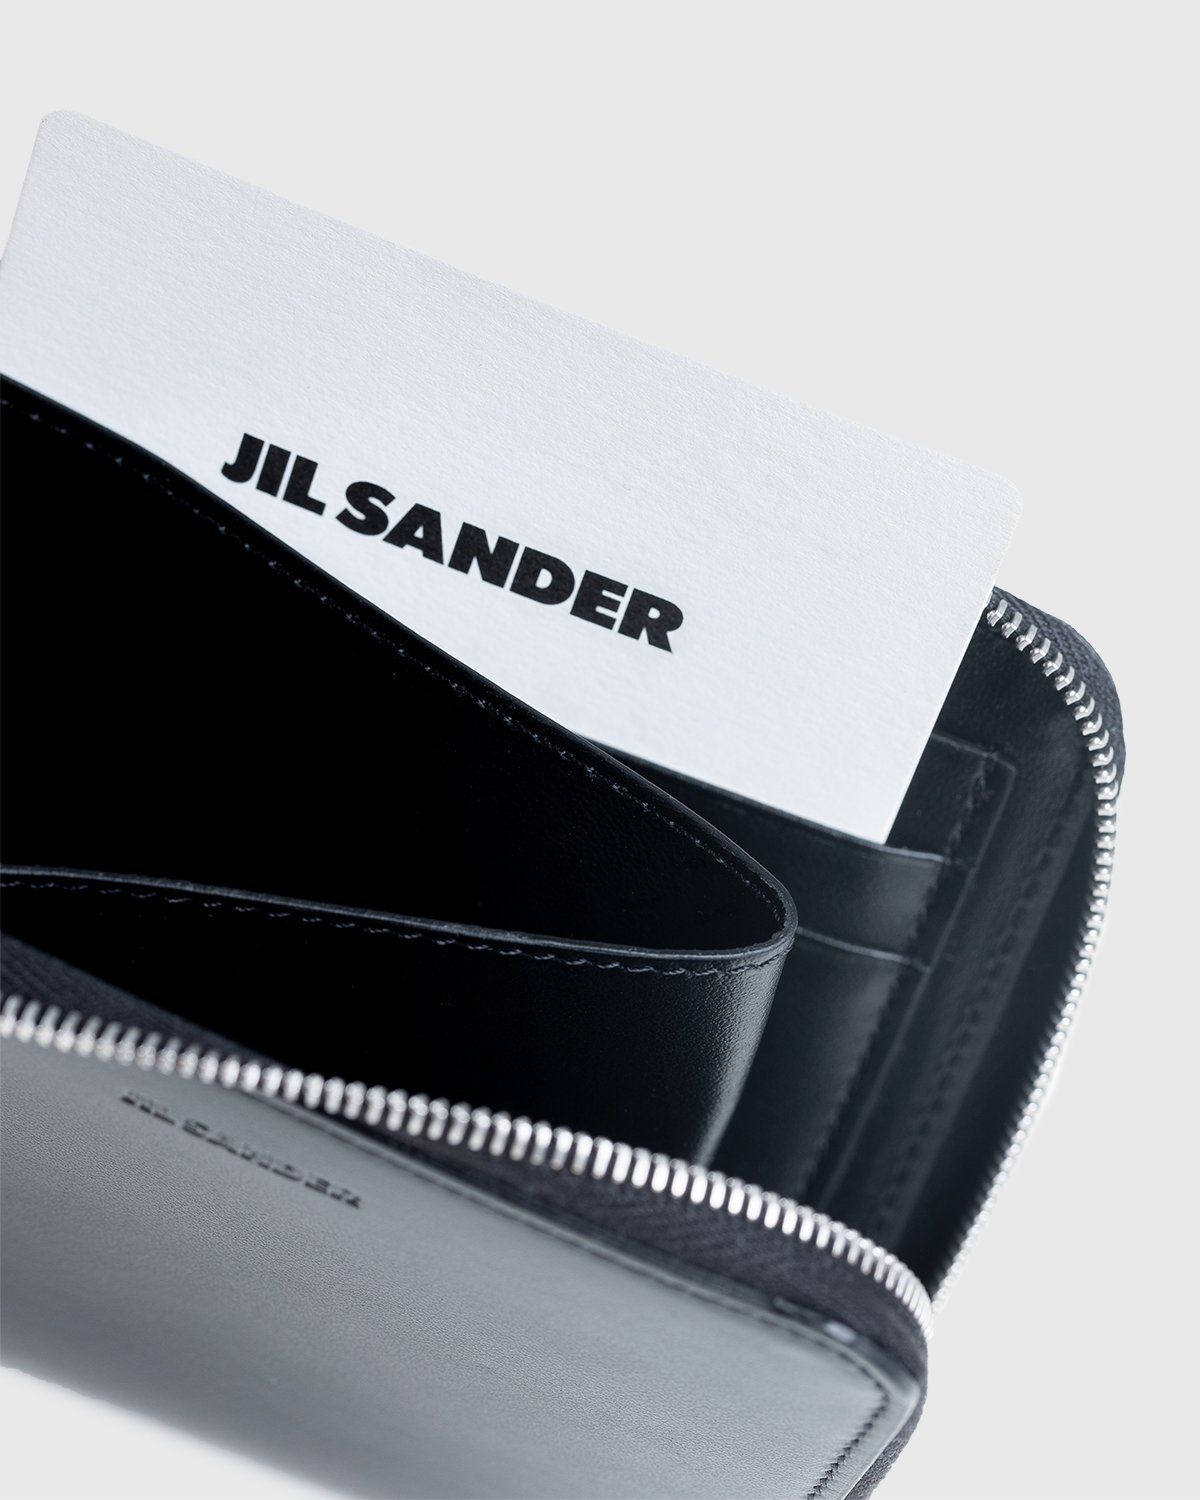 Jil Sander – Credit Card Purse Black - Card Holders - Black - Image 6